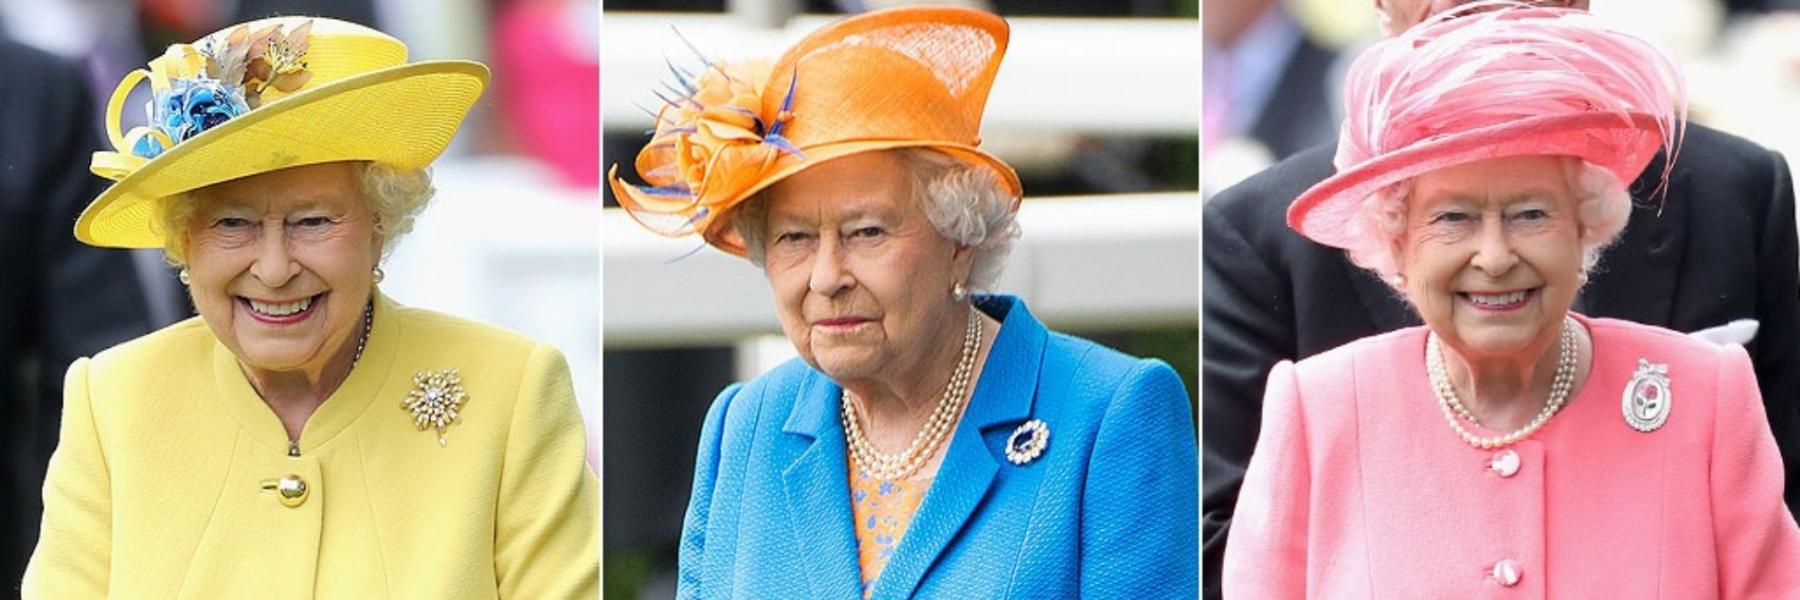 قبعات الملكة اليزابيث